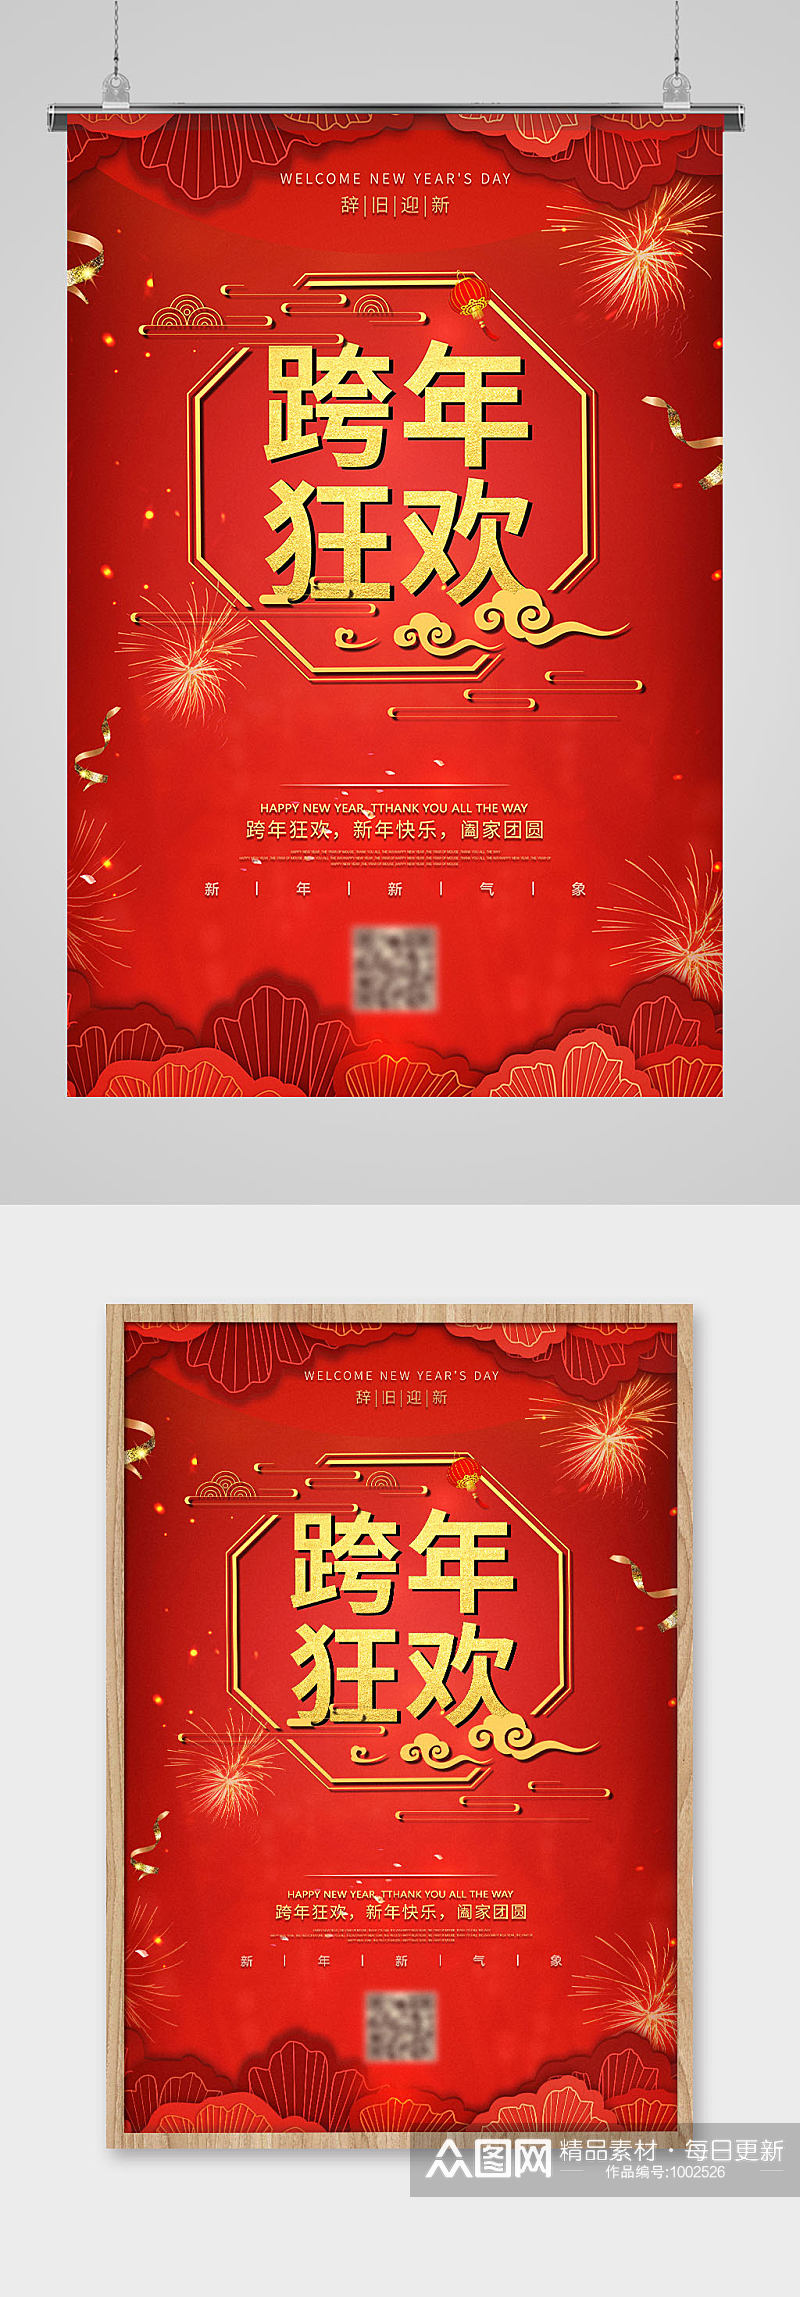 红色中国风喜庆吊坠跨年狂欢节日宣传海报素材